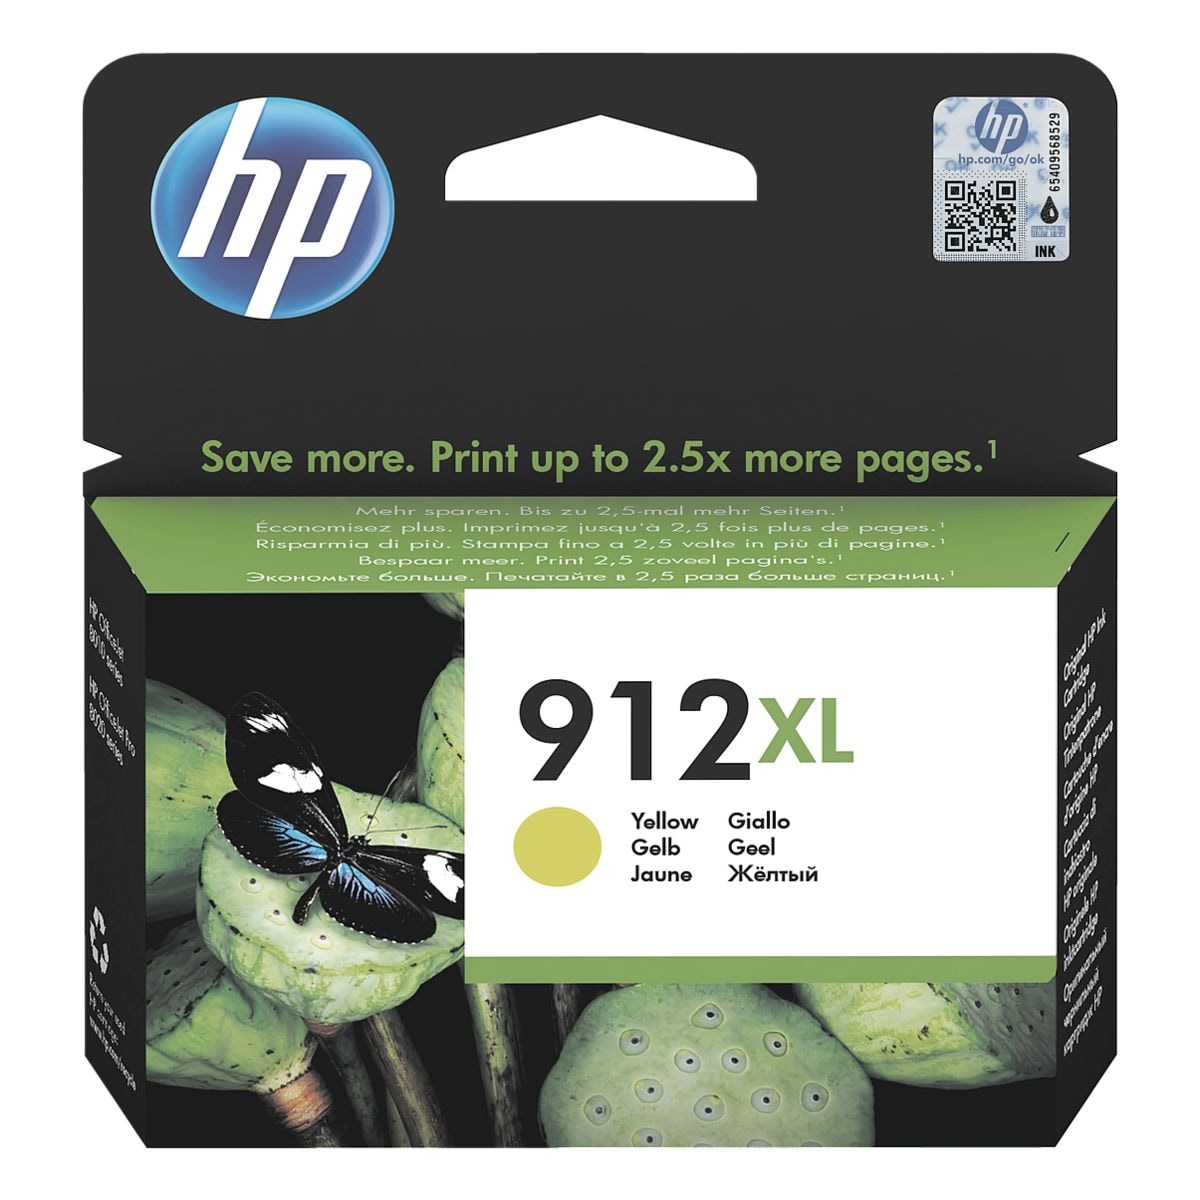 HP Tintenpatrone HP 912 XL, gelb - 3YL83AE 